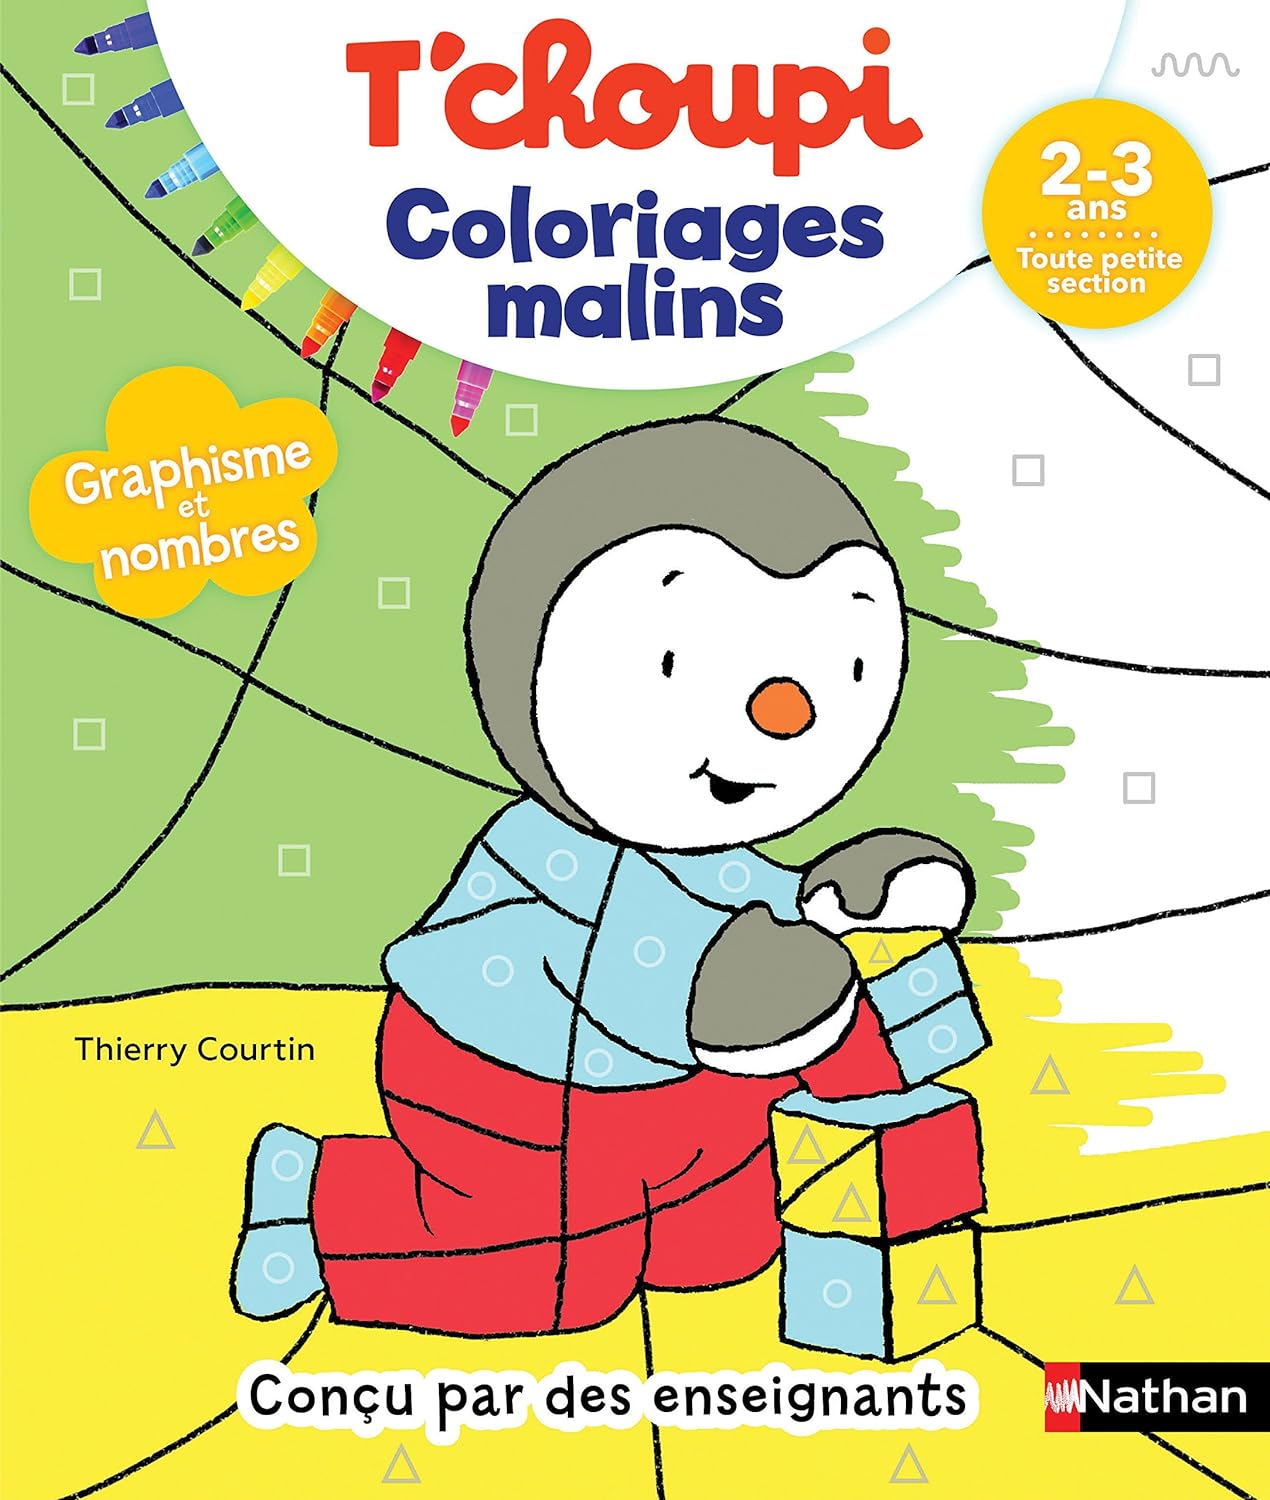 Acheter Coloriages Malins - T'choupi - Graphisme Et Nombres - Toute Petite Section - 2/3 Ans